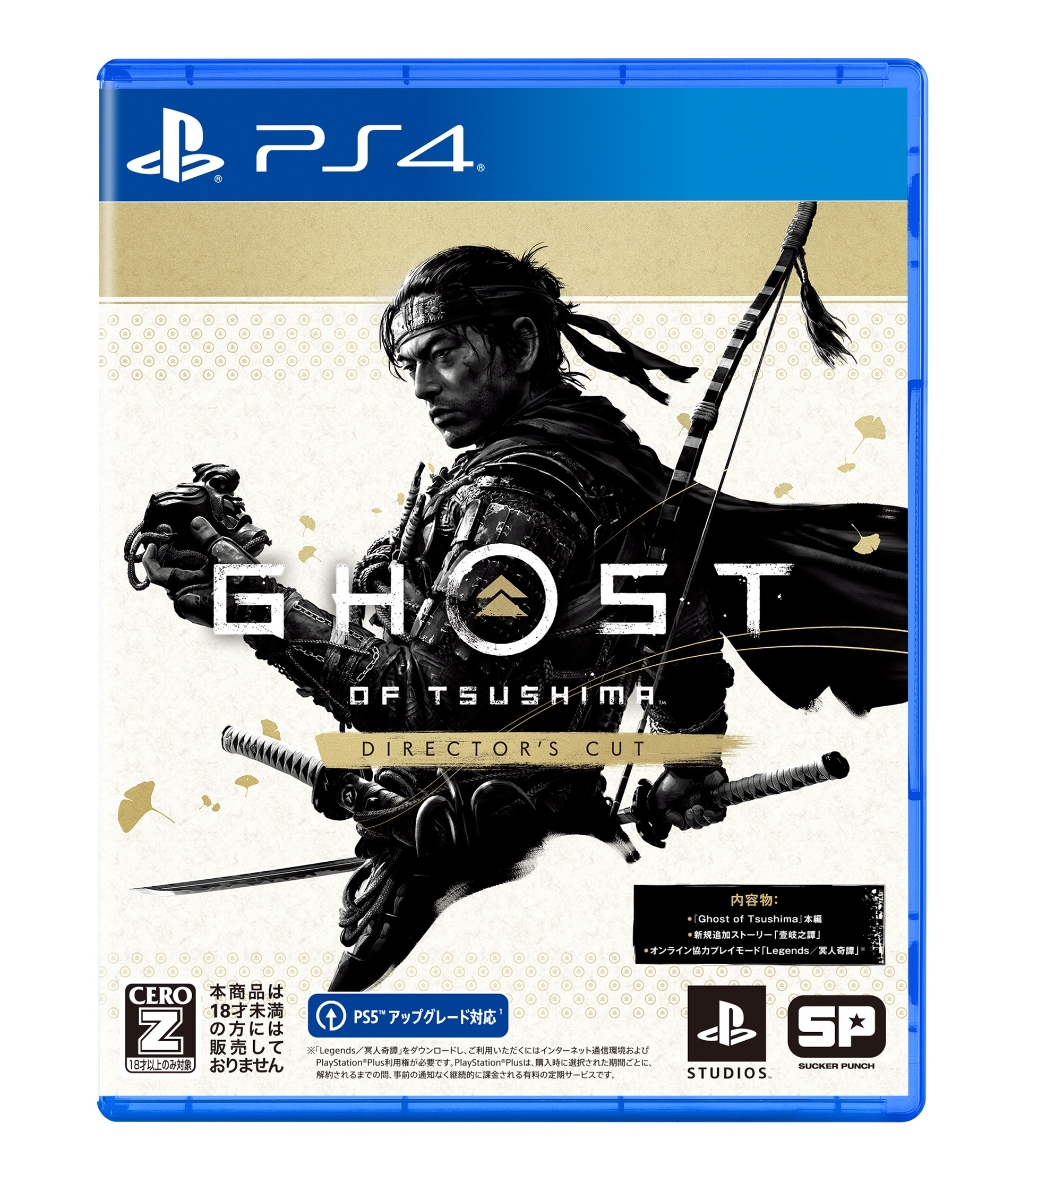 即日出荷 全国配送料無料 送料無料 PS4 ゴーストオブツシマ 割引も実施中 ディレクターズカット Tsushima Cut 090040 Director's 海外輸入 of Ghost